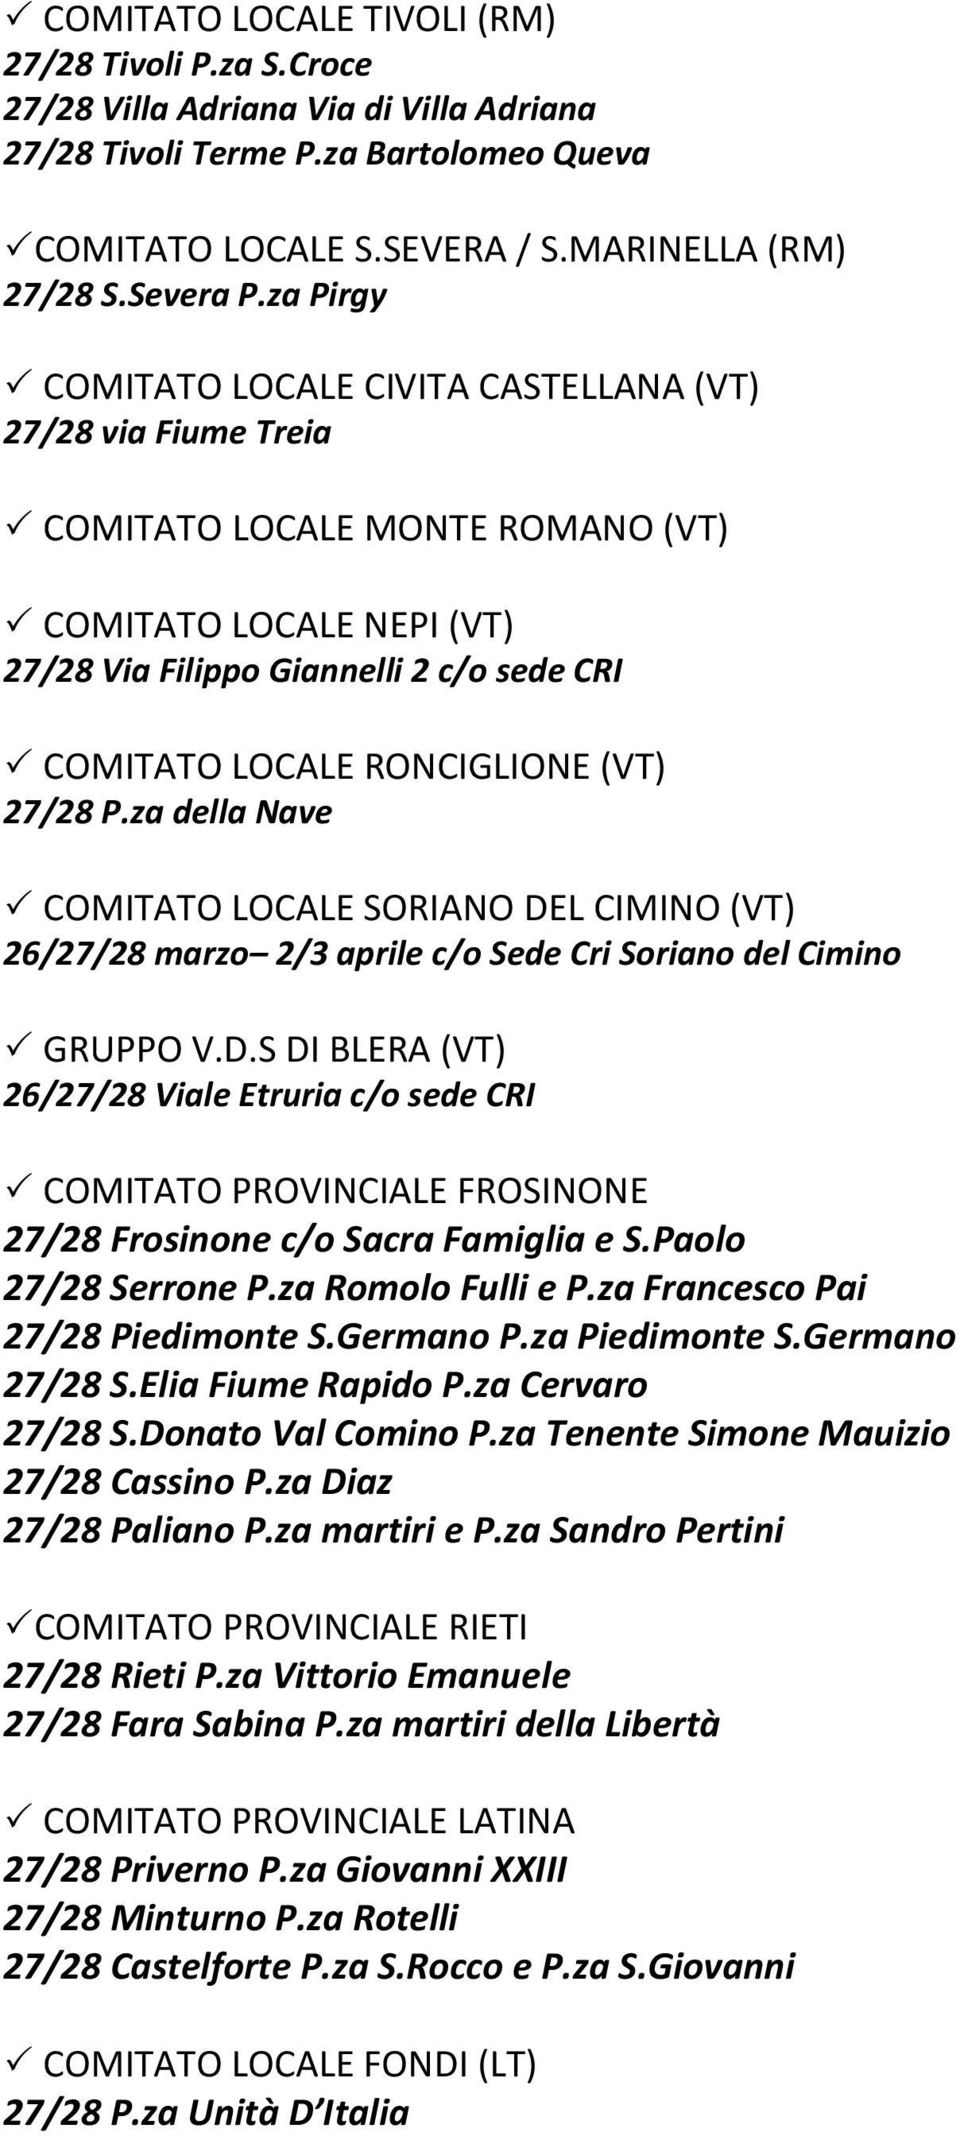 RONCIGLIONE (VT) 27/28 P.za della Nave COMITATO LOCALE SORIANO DEL CIMINO (VT) 26/27/28 marzo 2/3 aprile c/o Sede Cri Soriano del Cimino GRUPPO V.D.S DI BLERA (VT) 26/27/28 Viale Etruria c/o sede CRI COMITATO PROVINCIALE FROSINONE 27/28 Frosinone c/o Sacra Famiglia e S.